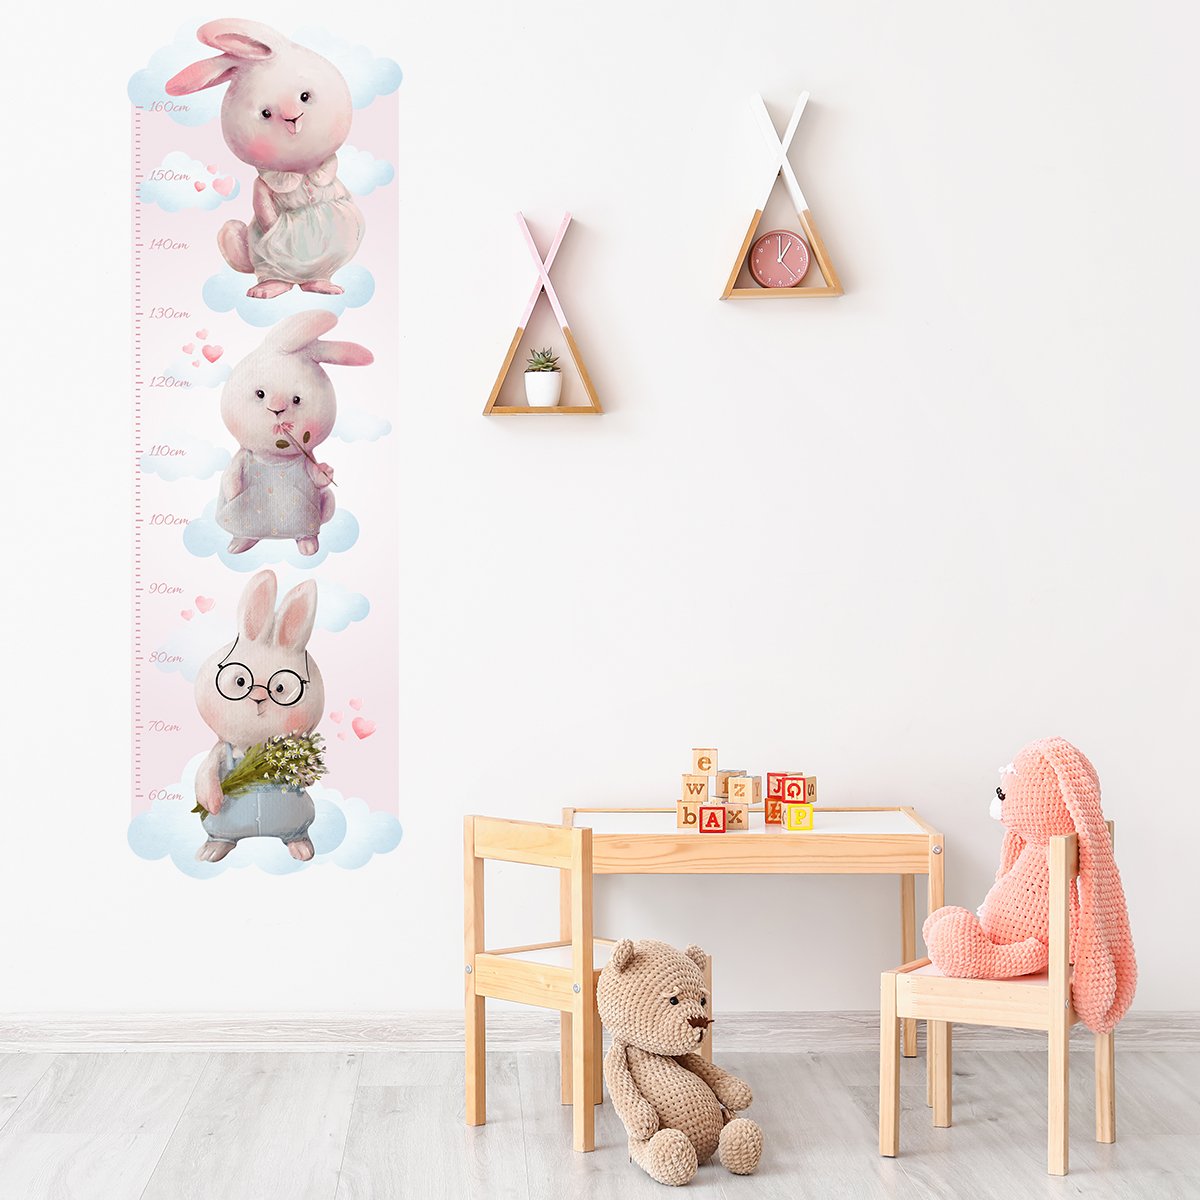 Naklejka na ścianę dla dzieci miarka wzrostu trzy króliczki i błękitne chmurki 